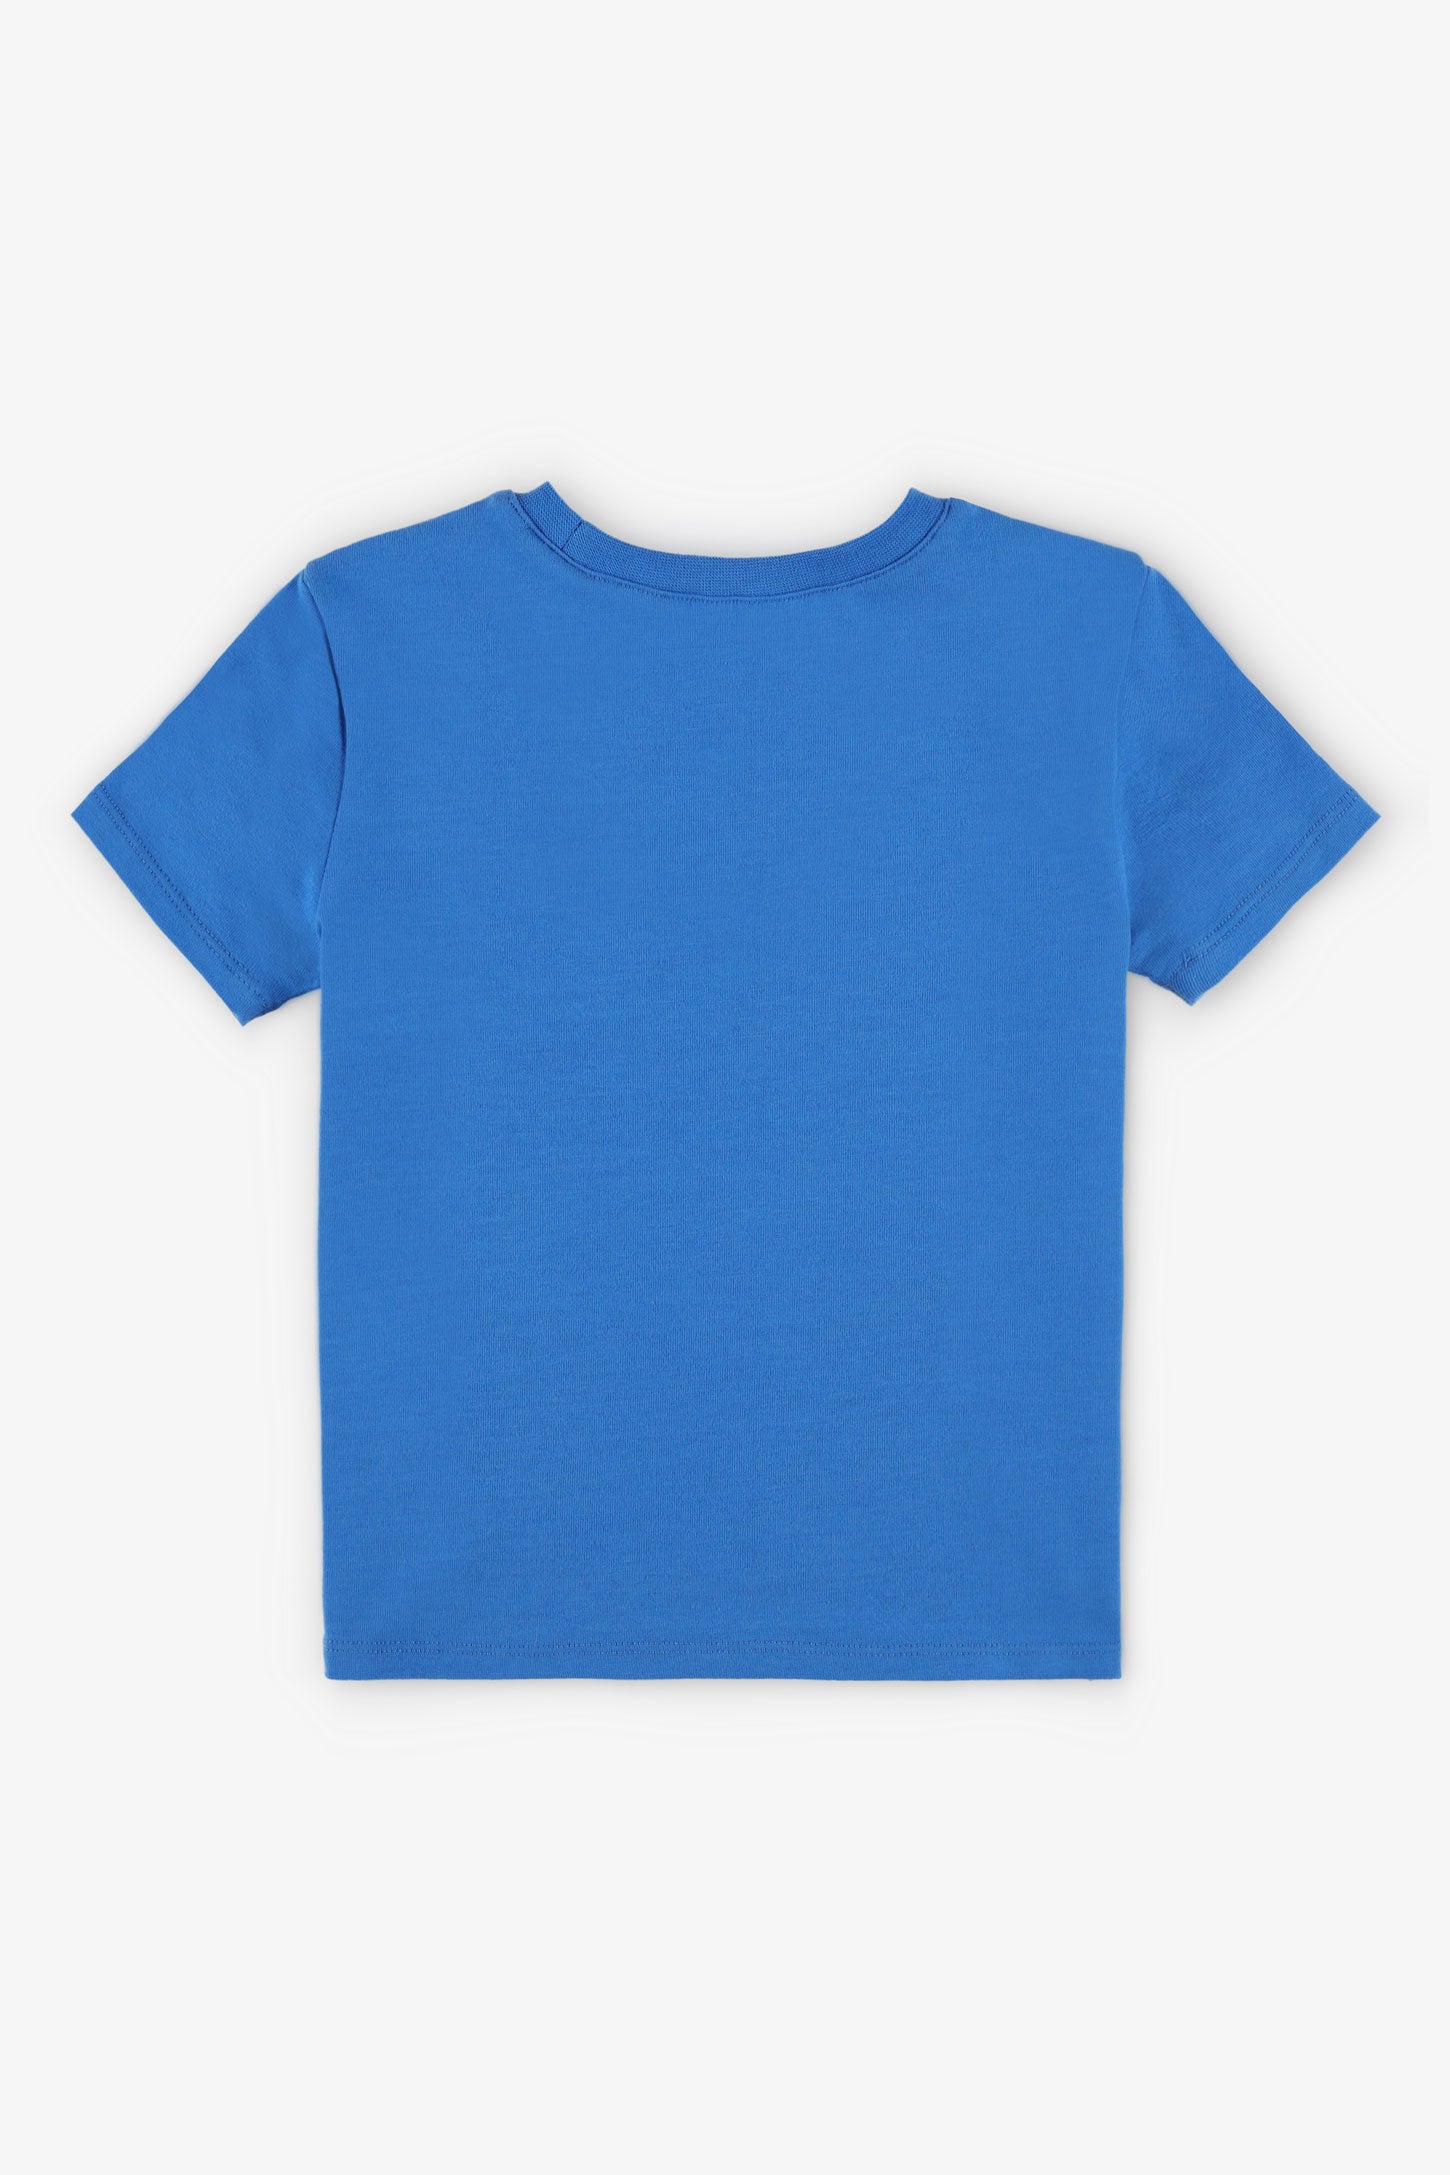 T-shirt col rond coupe droite coton, 2/15$ - Bébé garçon && BLEU